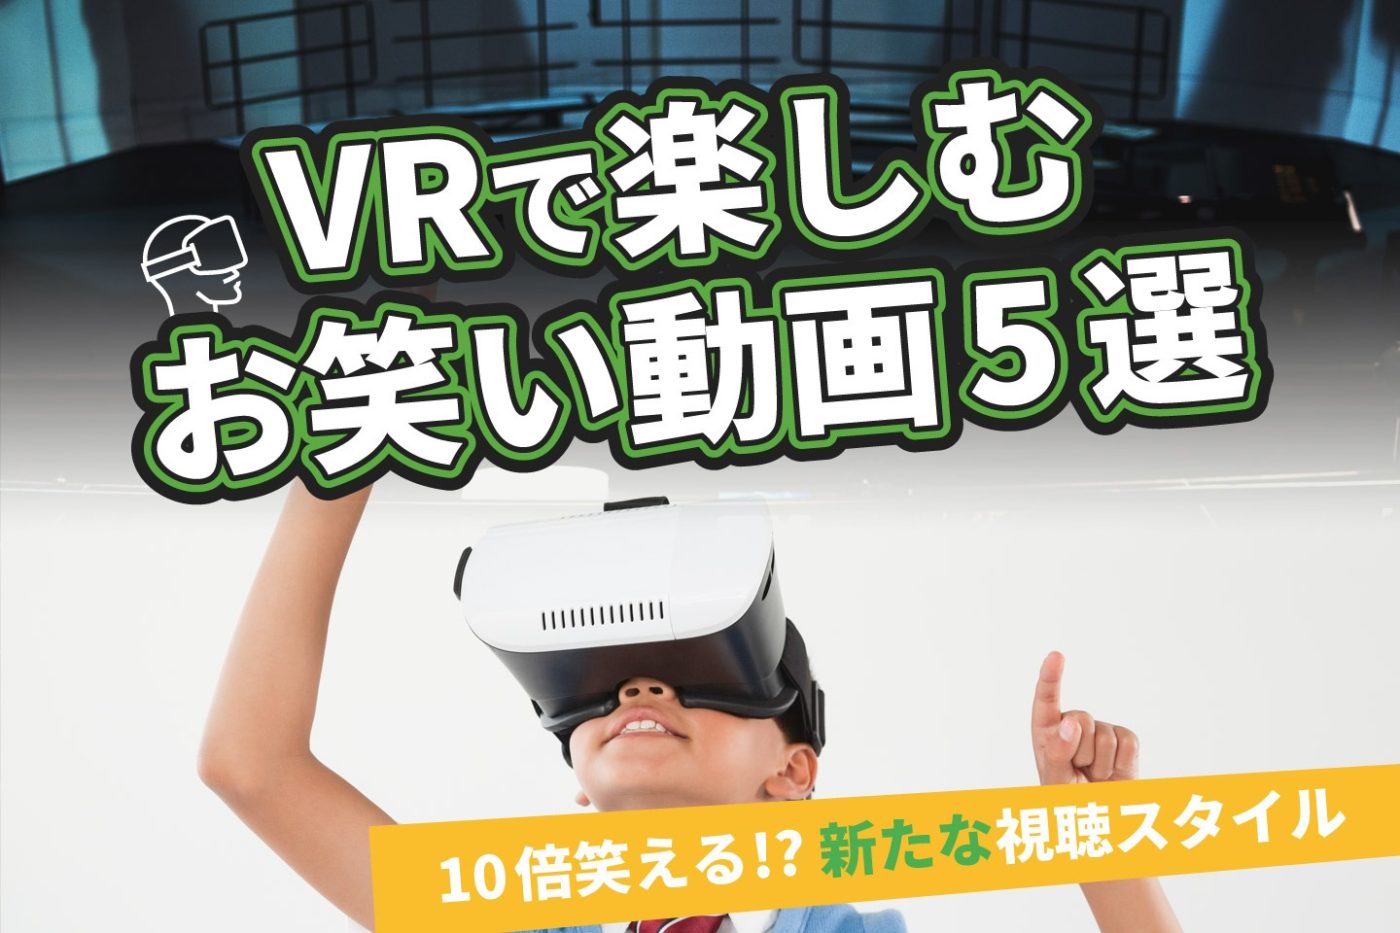 VRで楽しむお笑い動画5選【10倍笑える!? 新たな視聴スタイル】